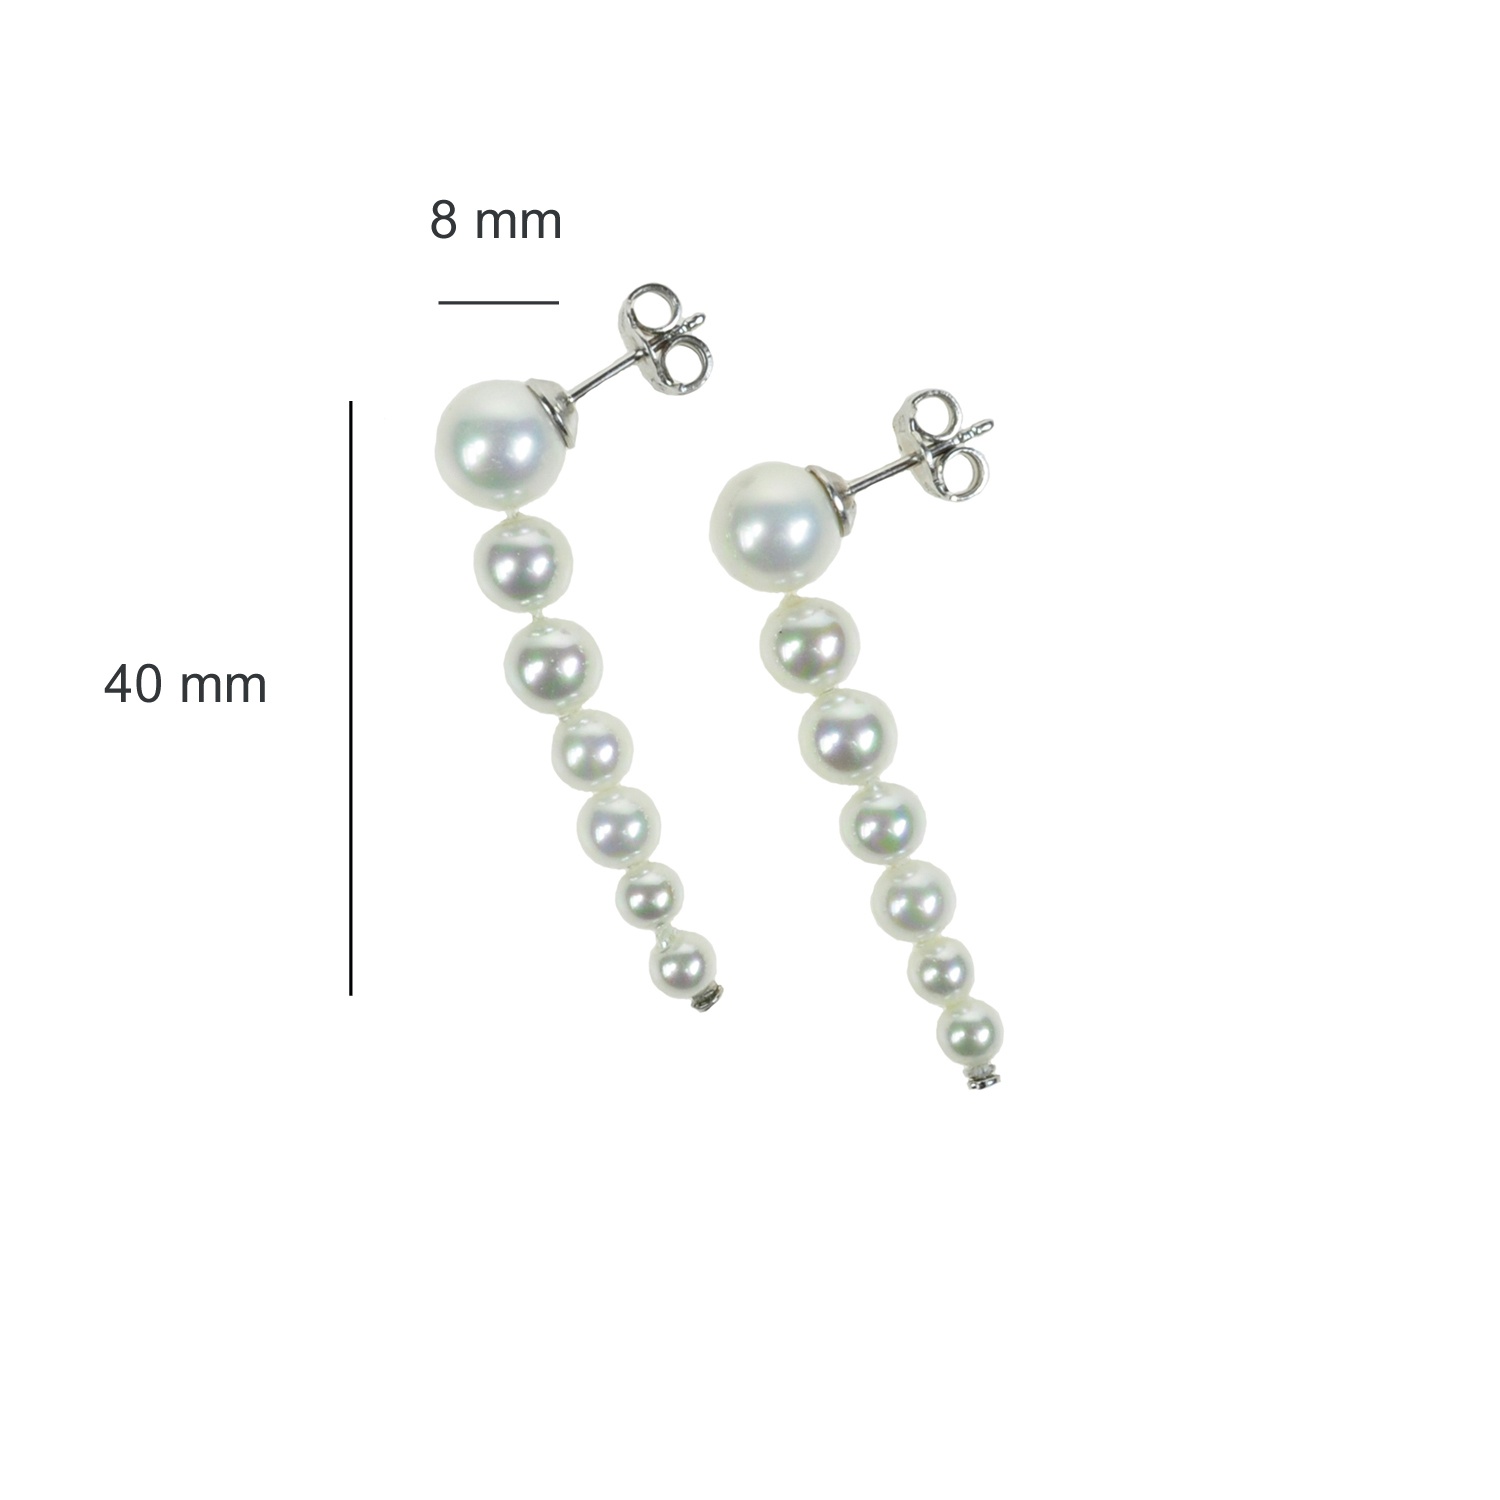 Pendientes clásicos con perlas blancas en disminución 2